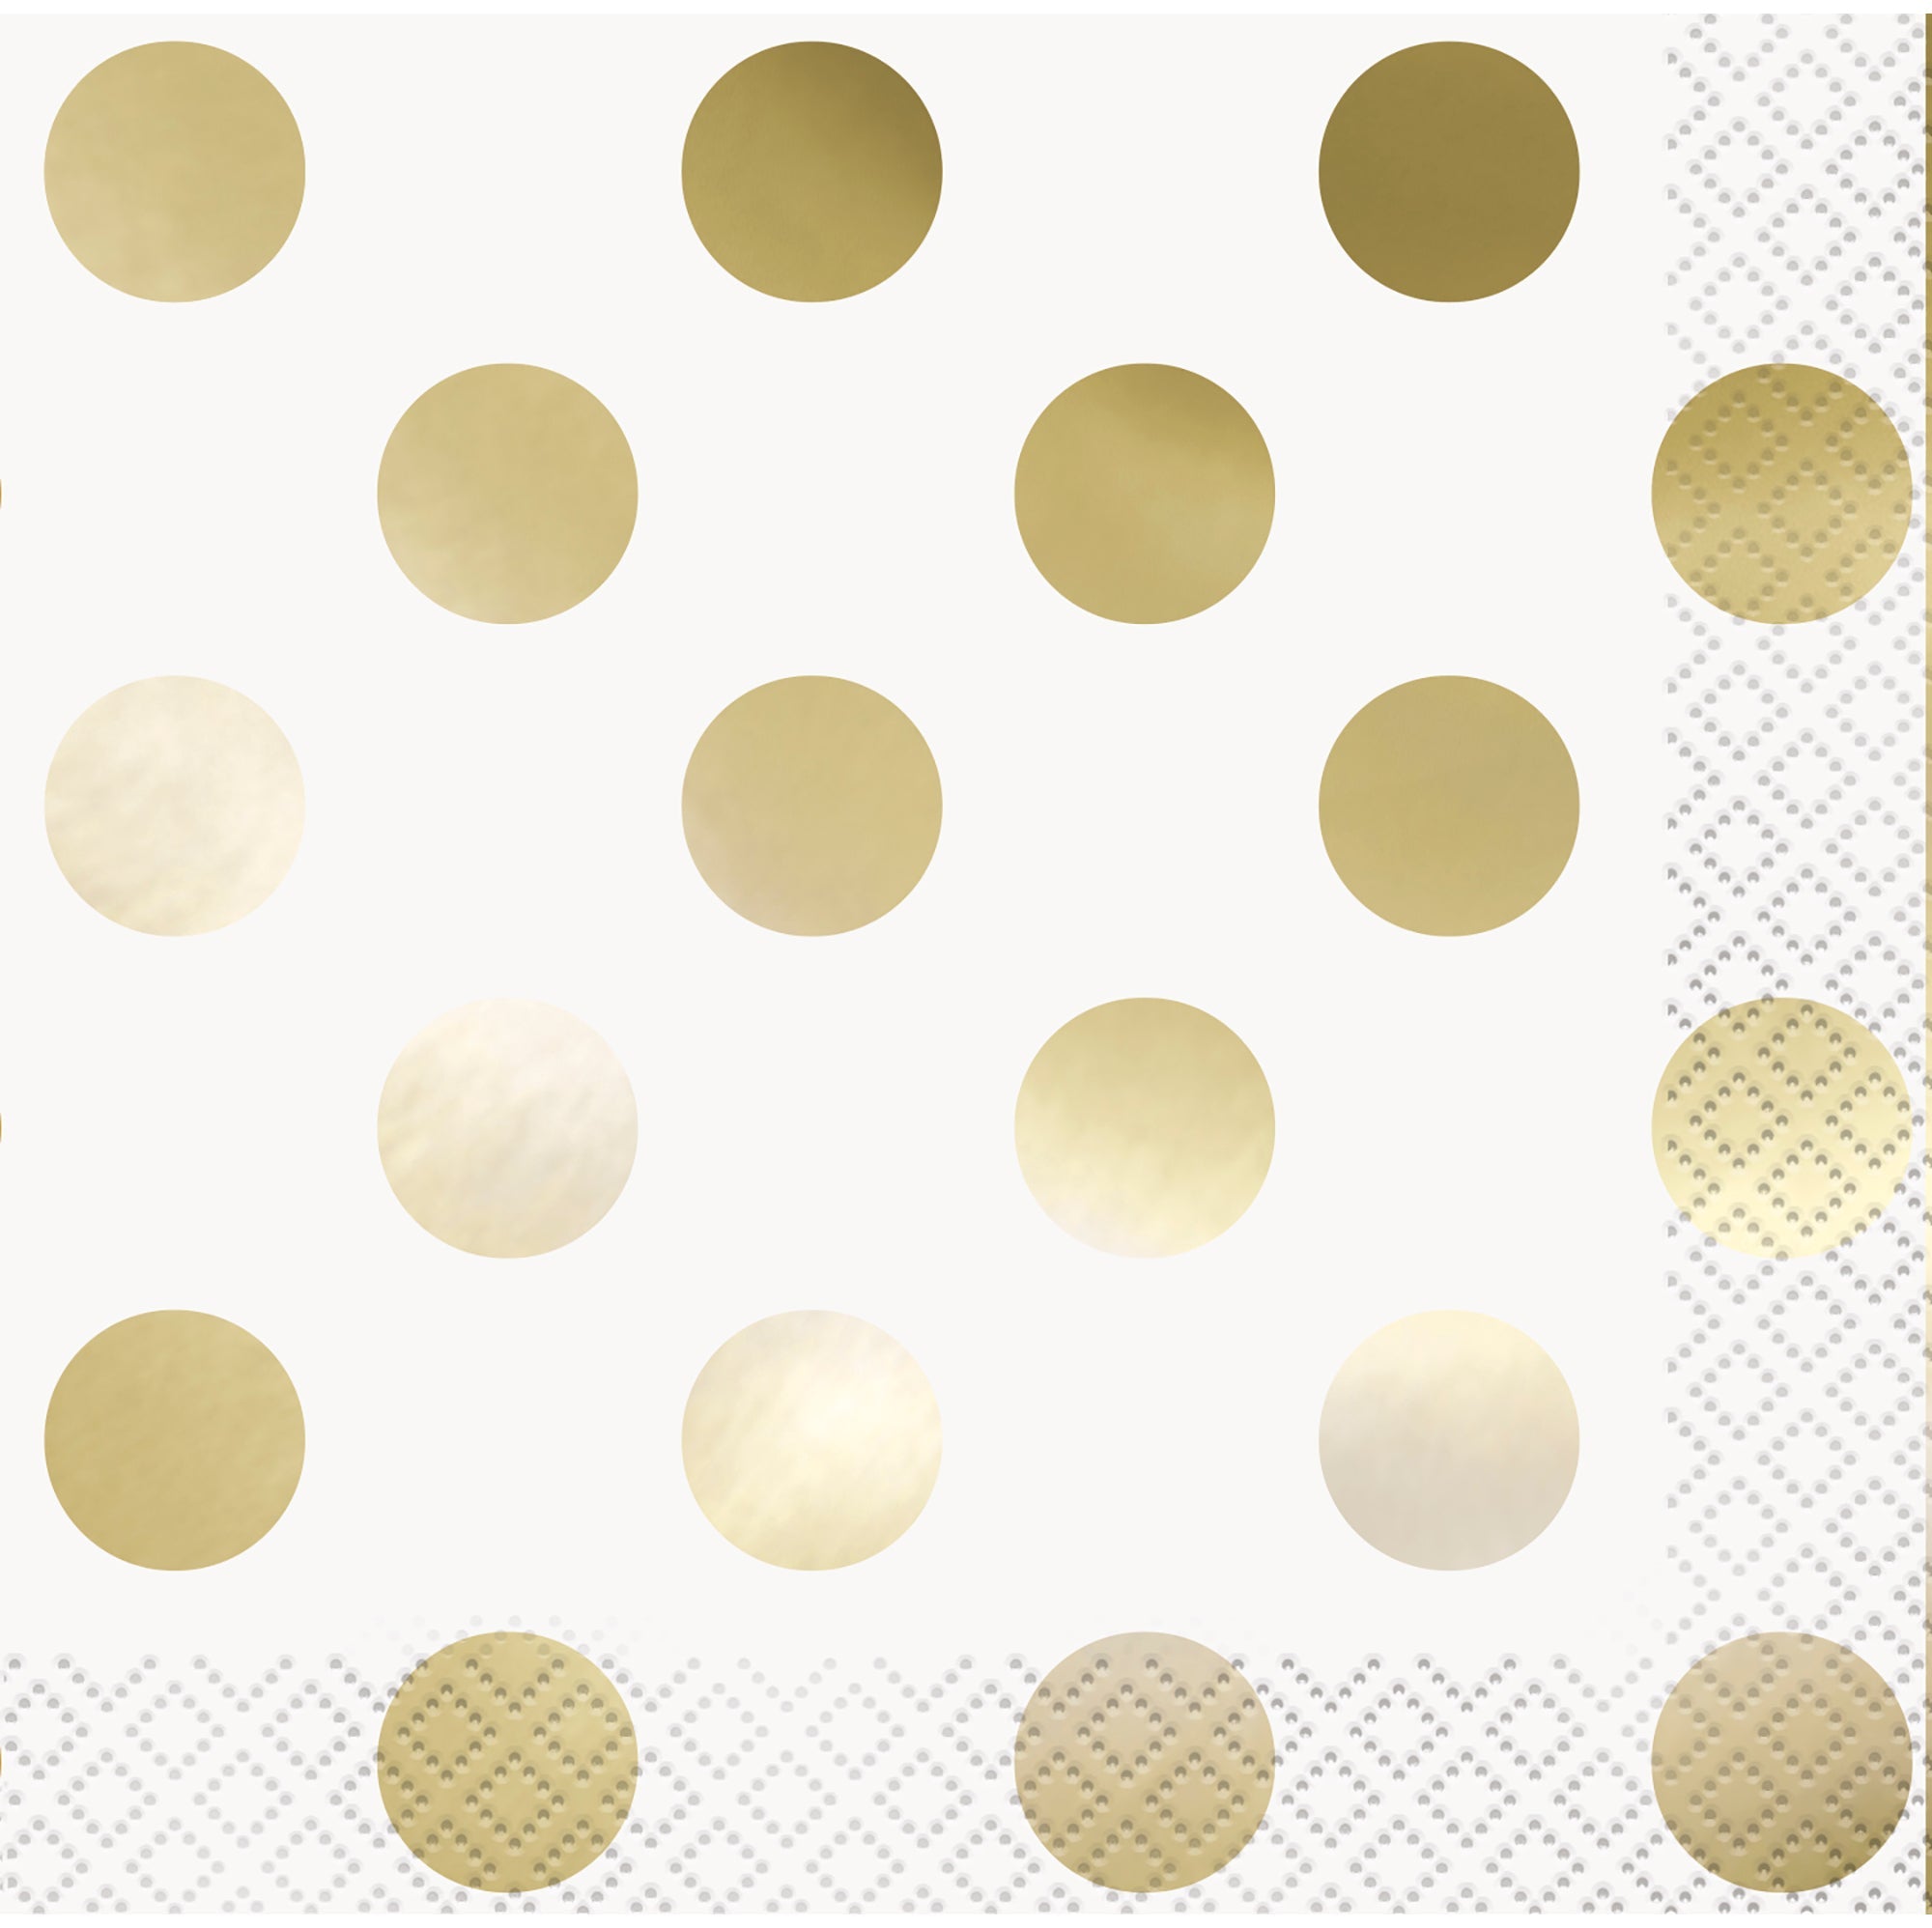 16 Gold Polka Dots Beverage Napkins 9.75x9.75in